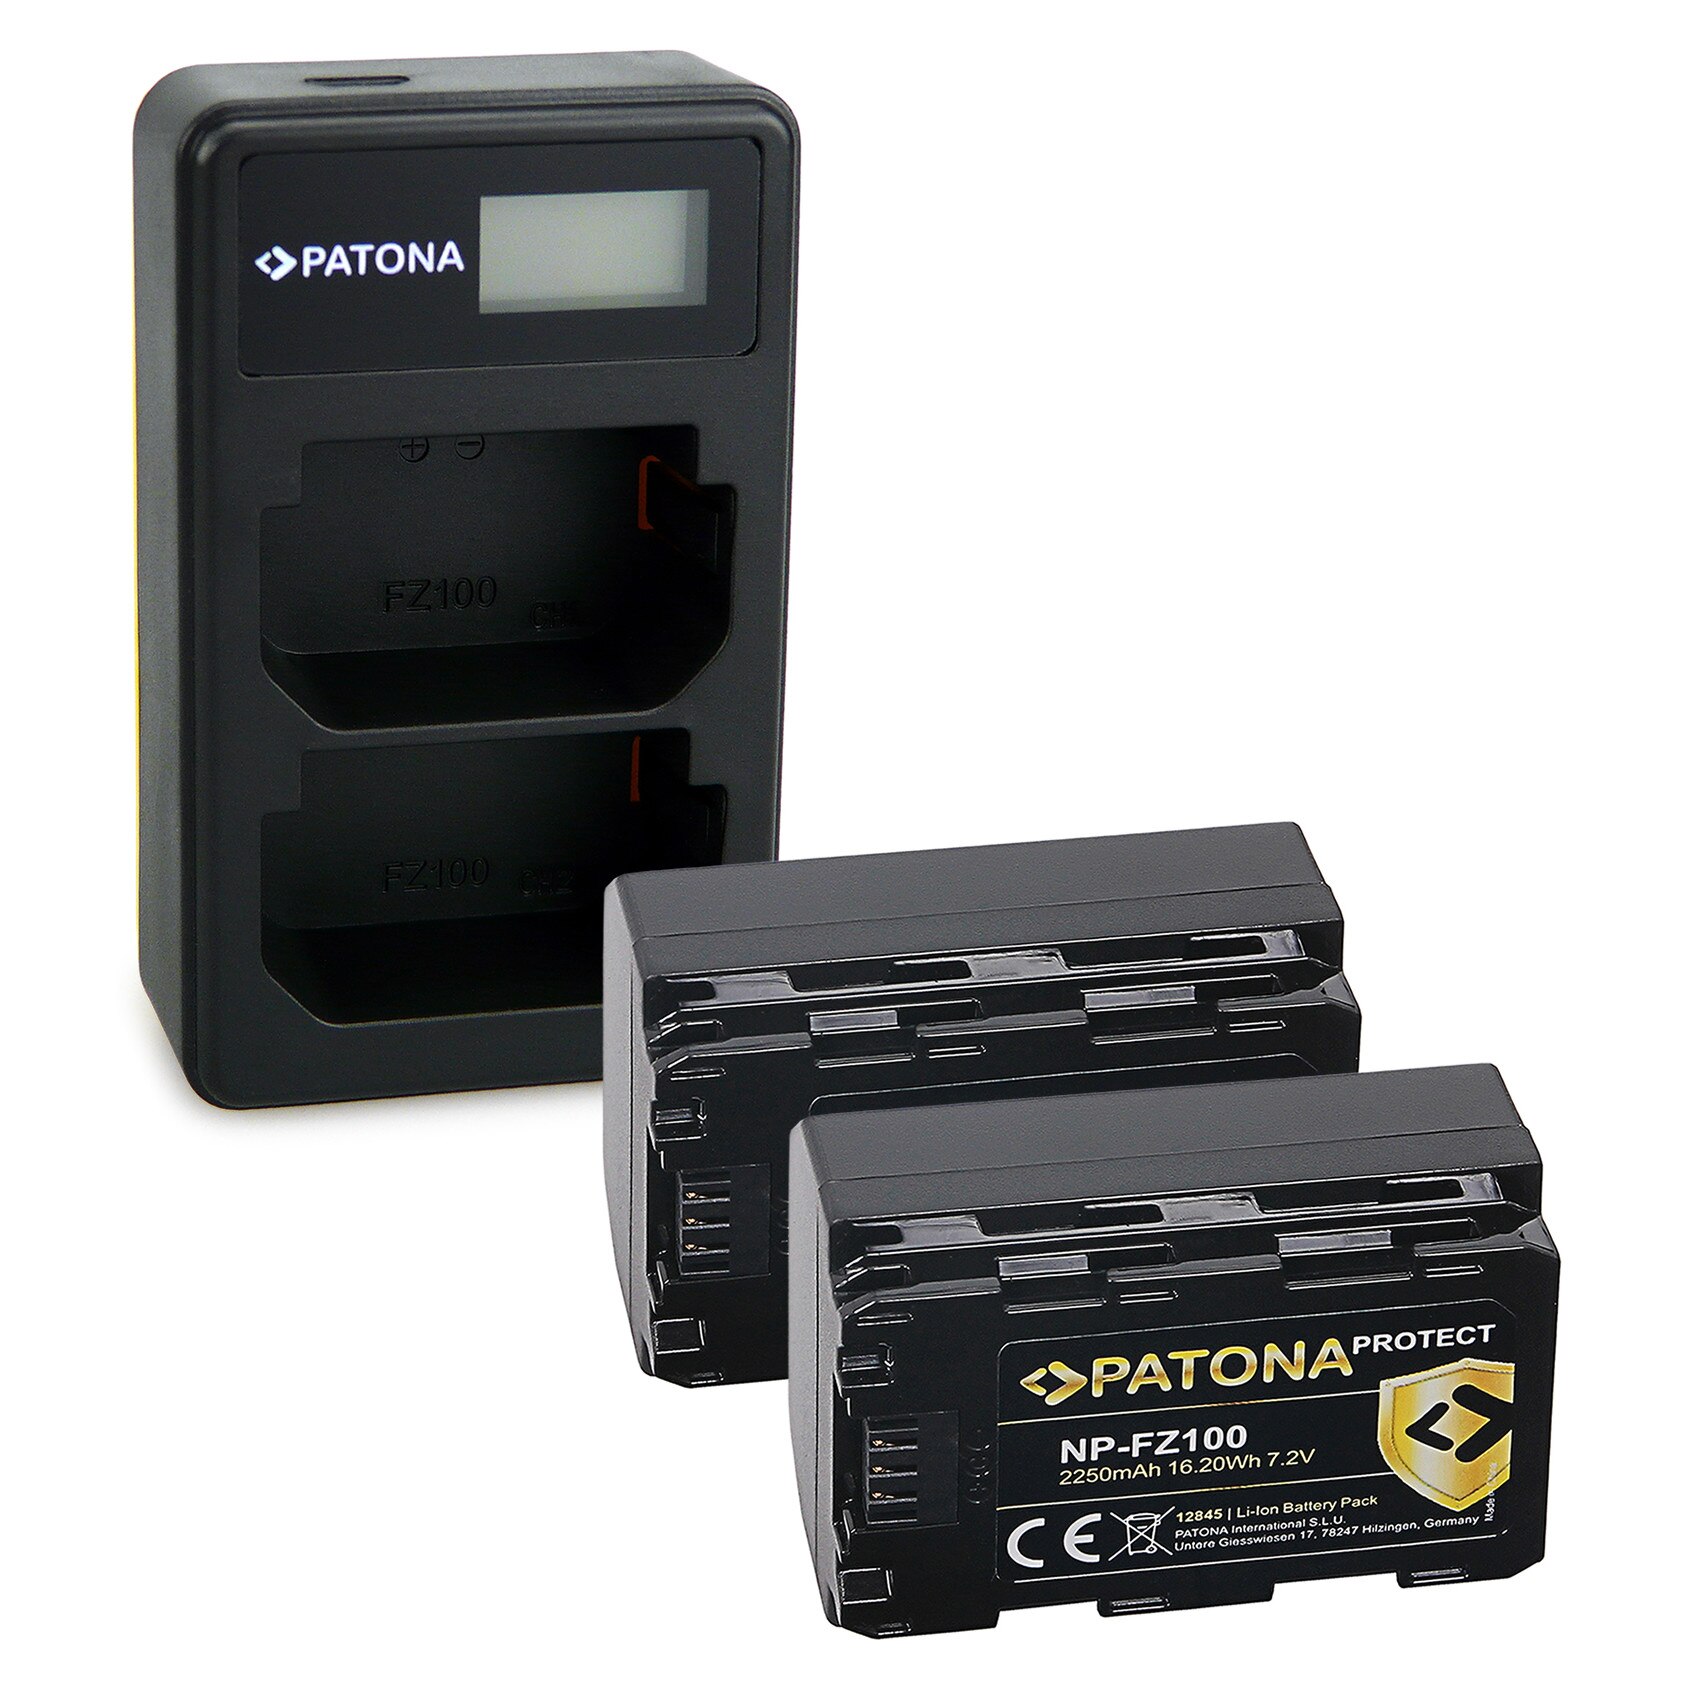 Patona Protect Bateria Sony NP-FZ100 2250mAh 7.2V